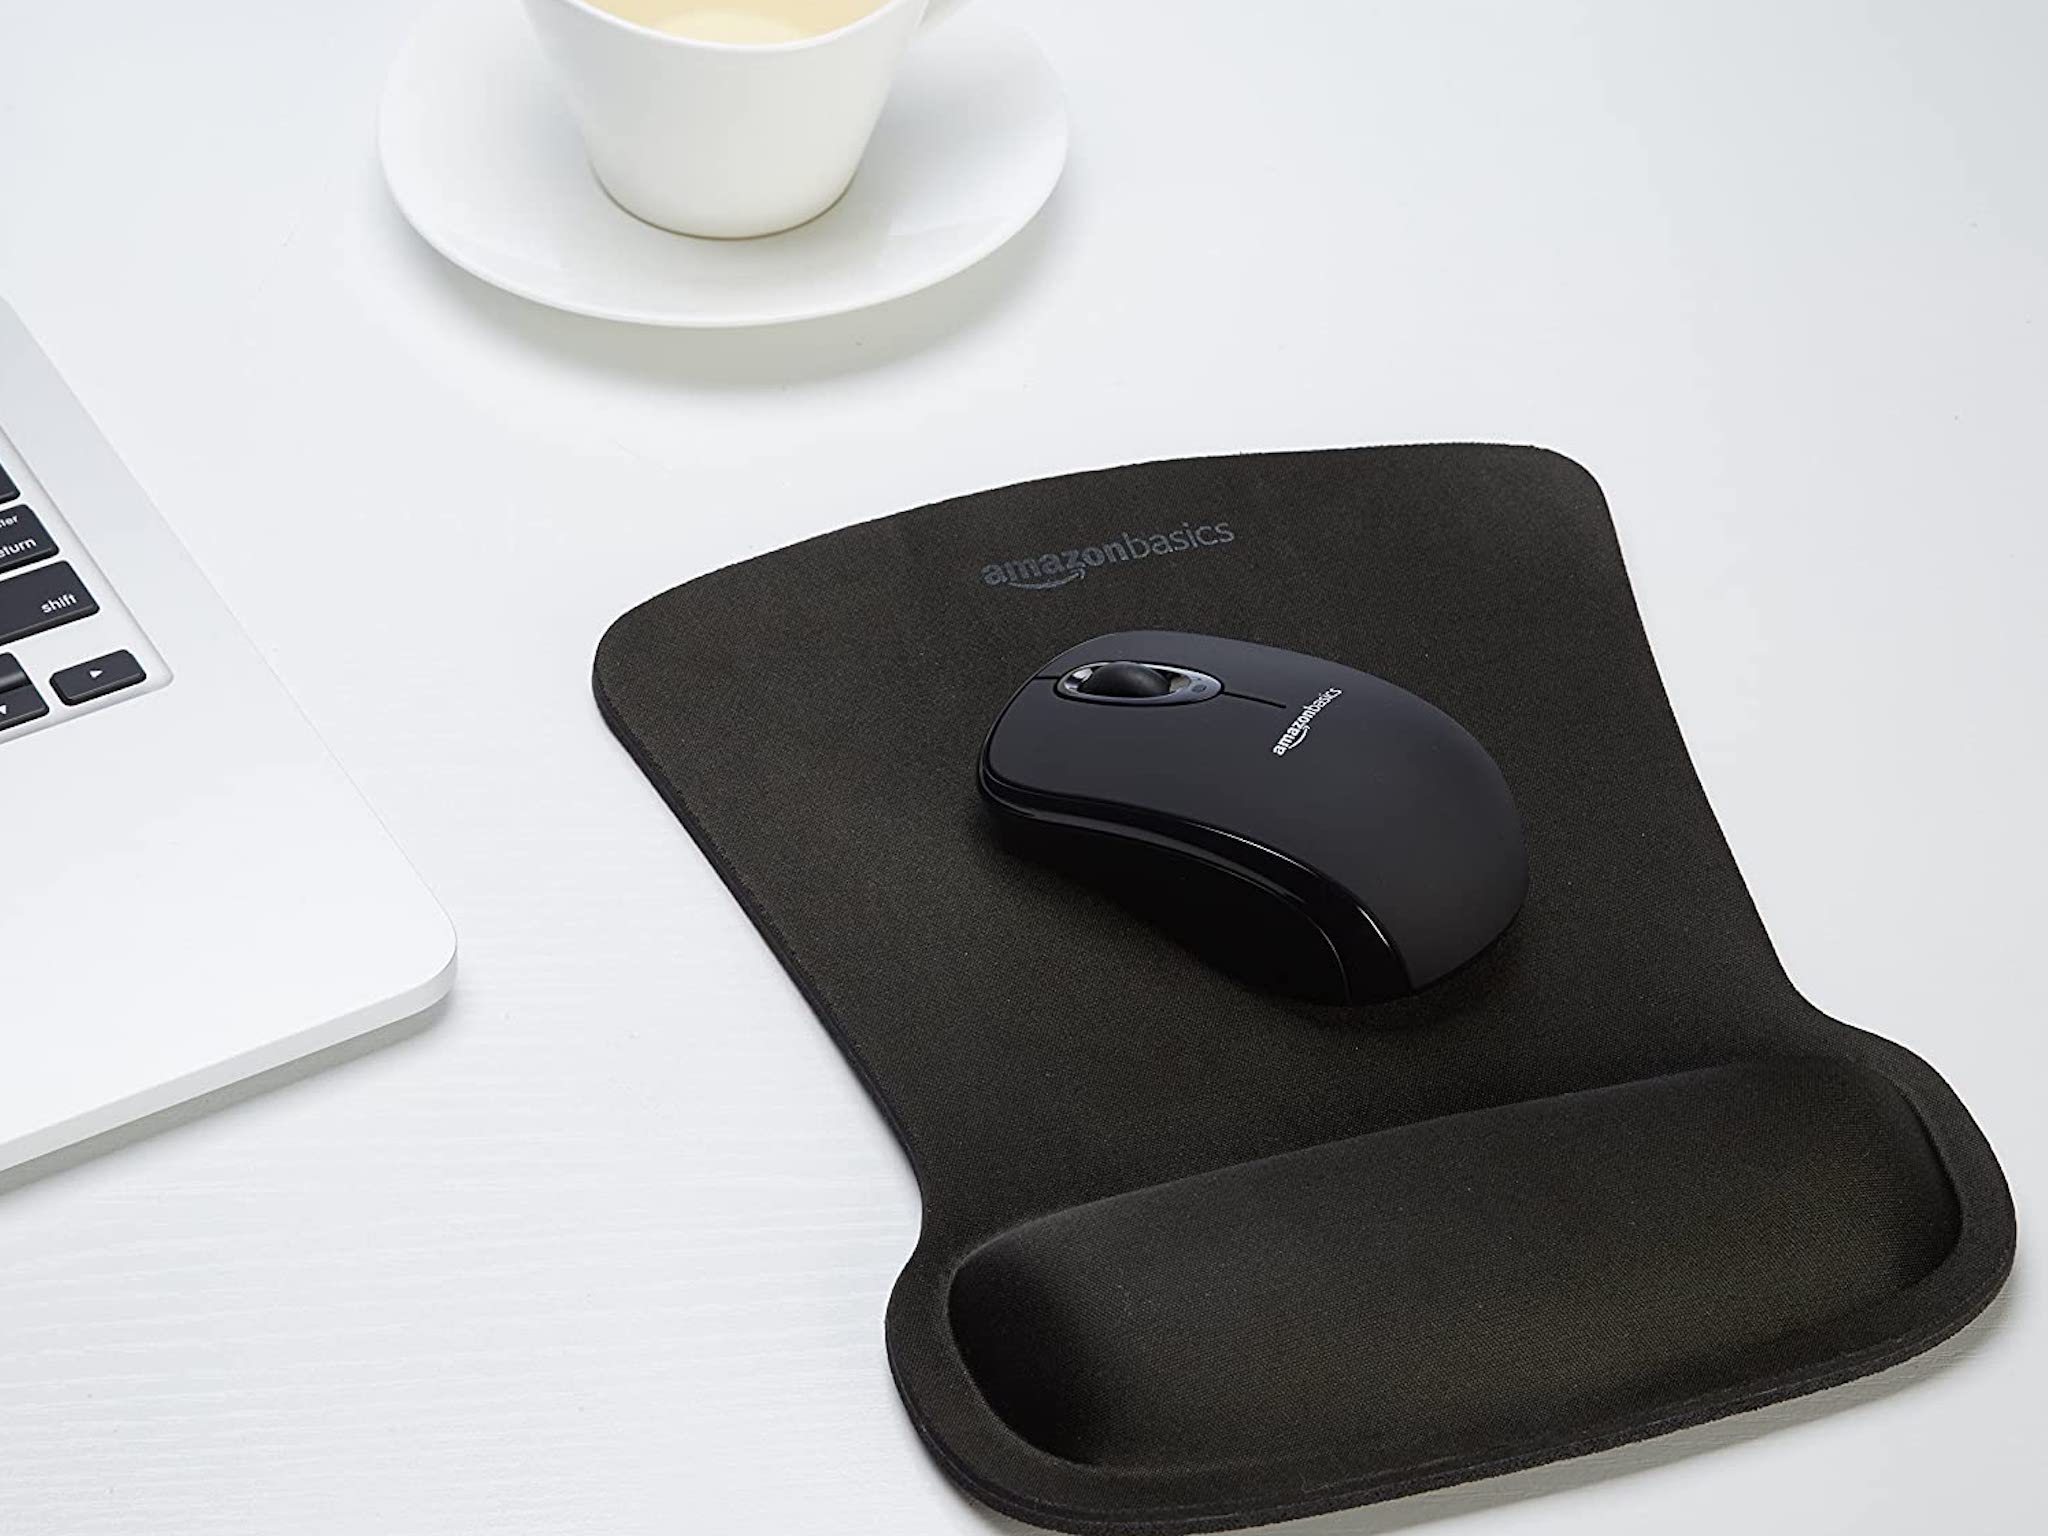 Amazon Basics Ergonomic Mouse Pad Lifestyle